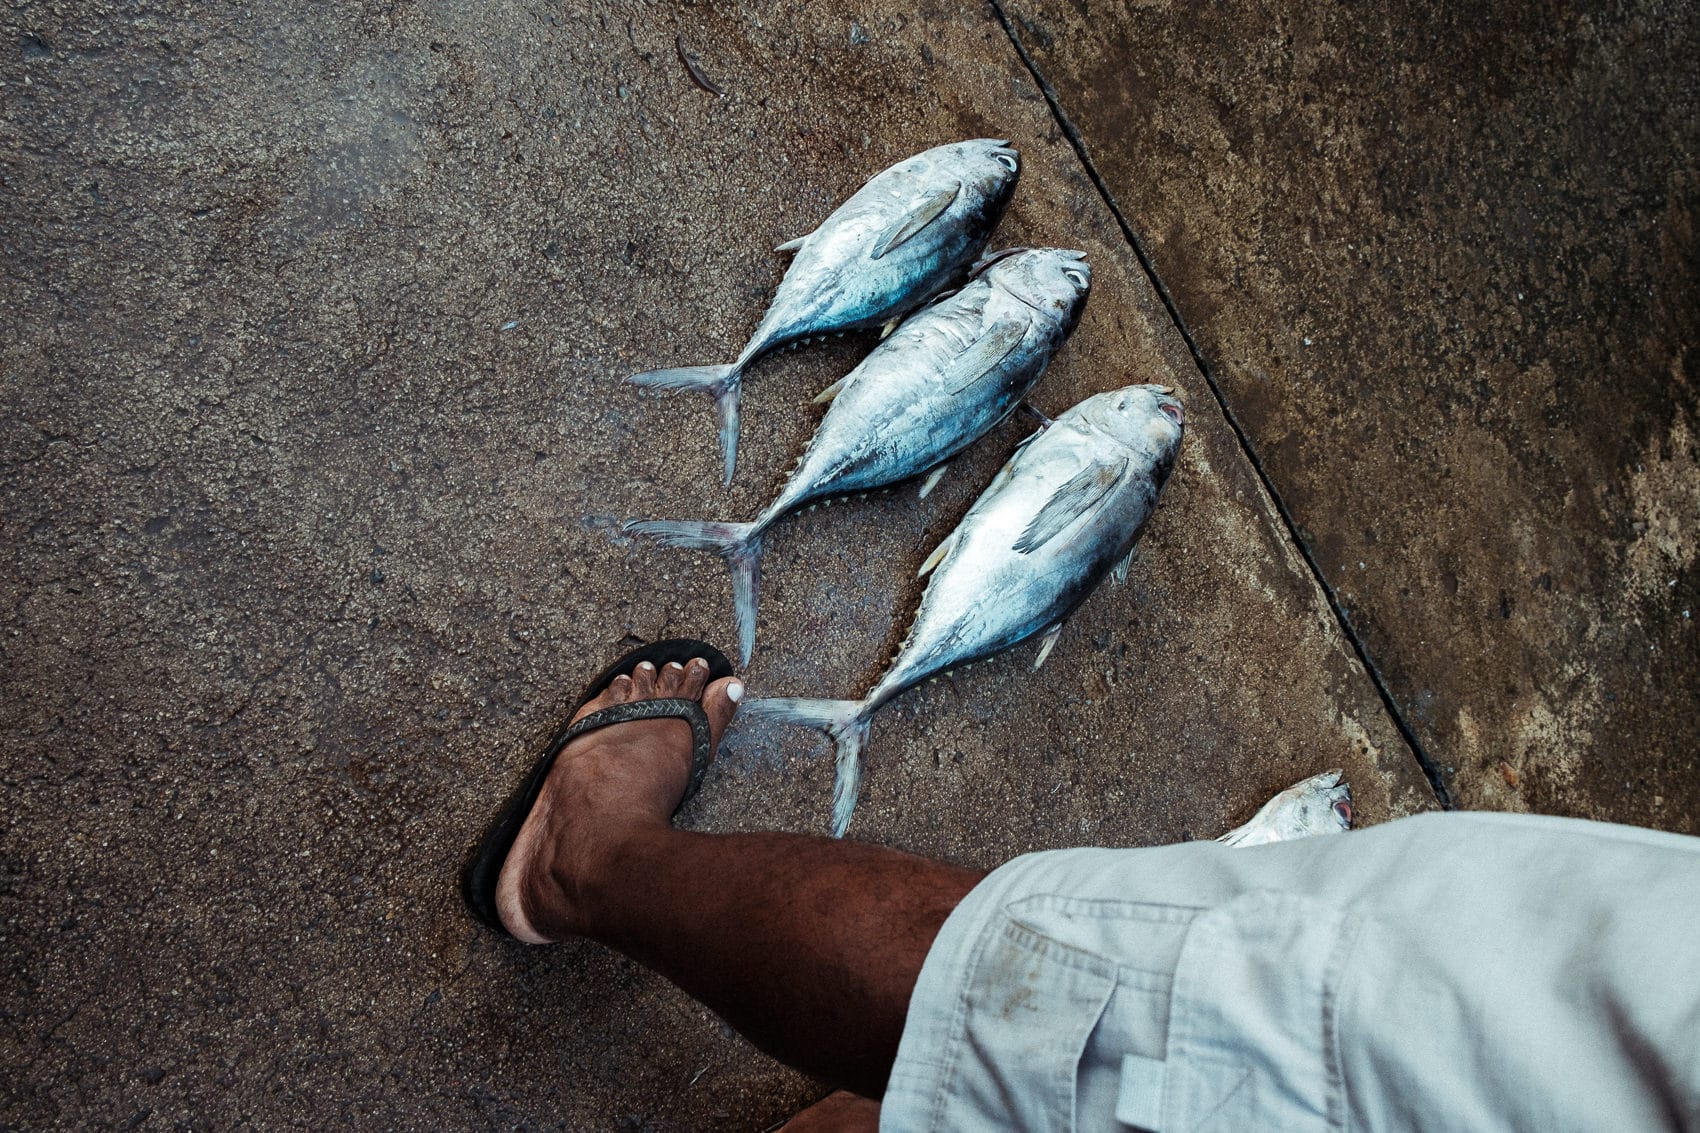 Sri Lanka Bentotta 2017 13 Fish Foot